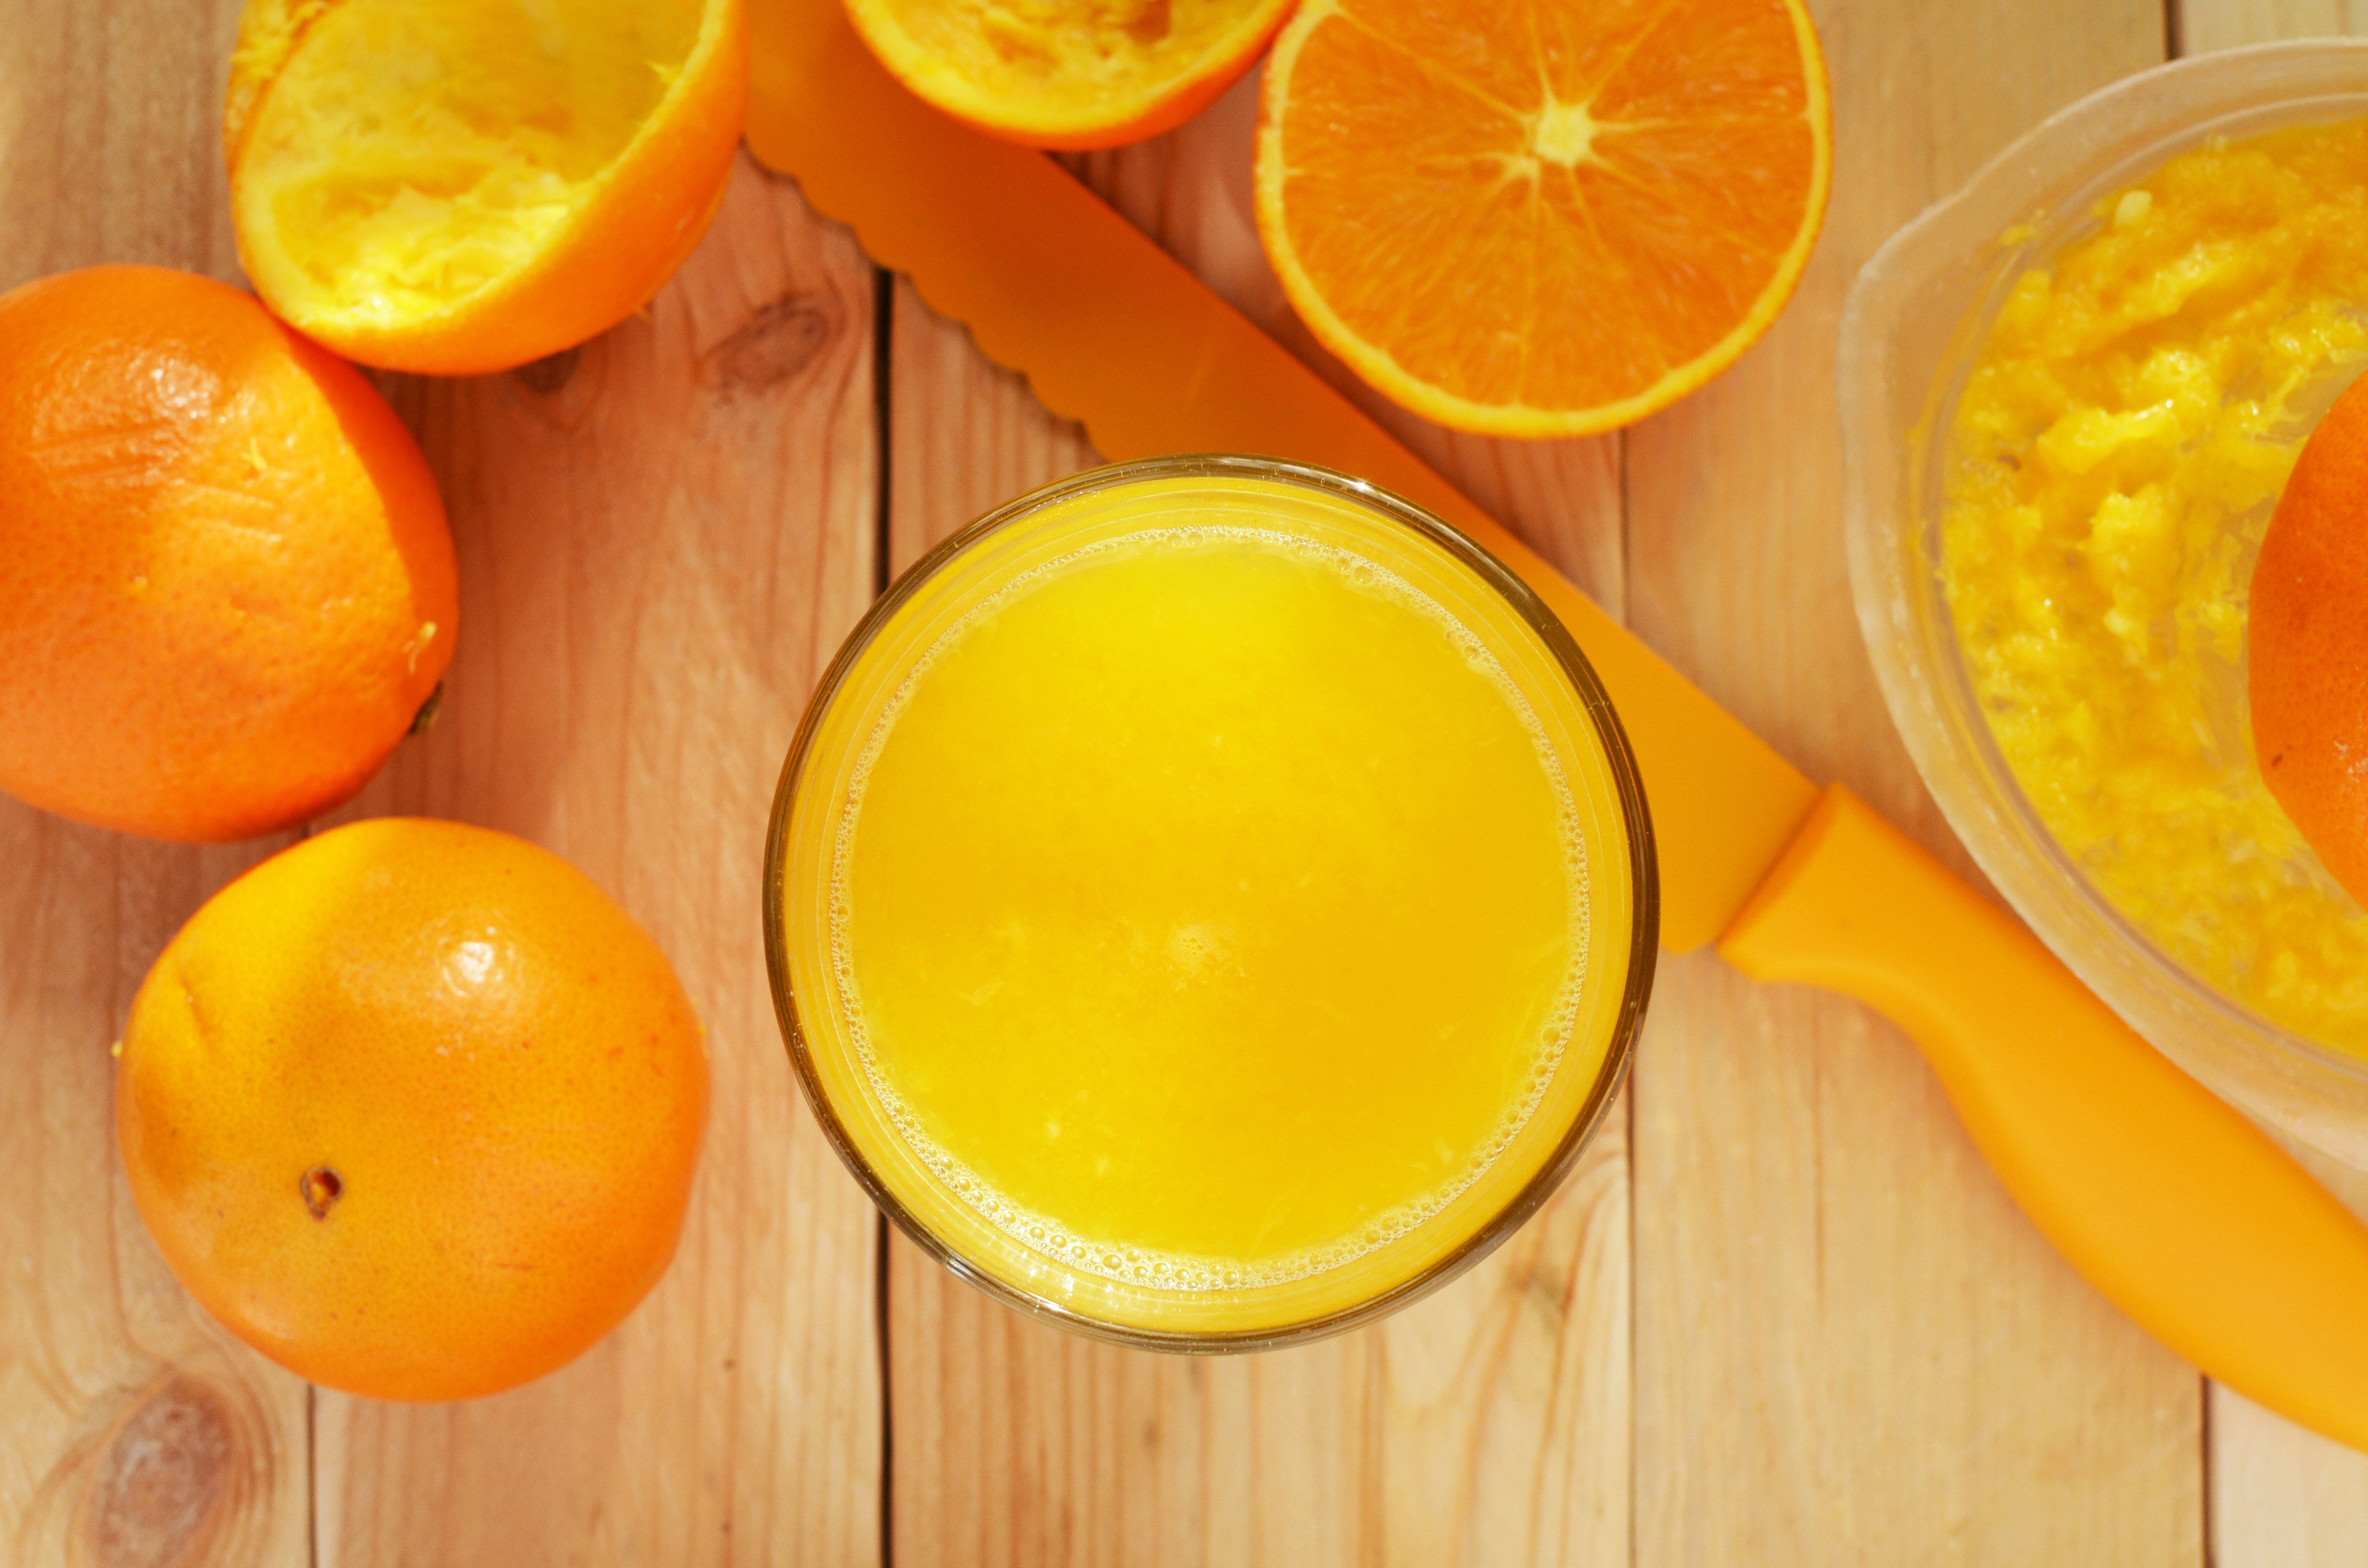 Florida Orange Juice Production